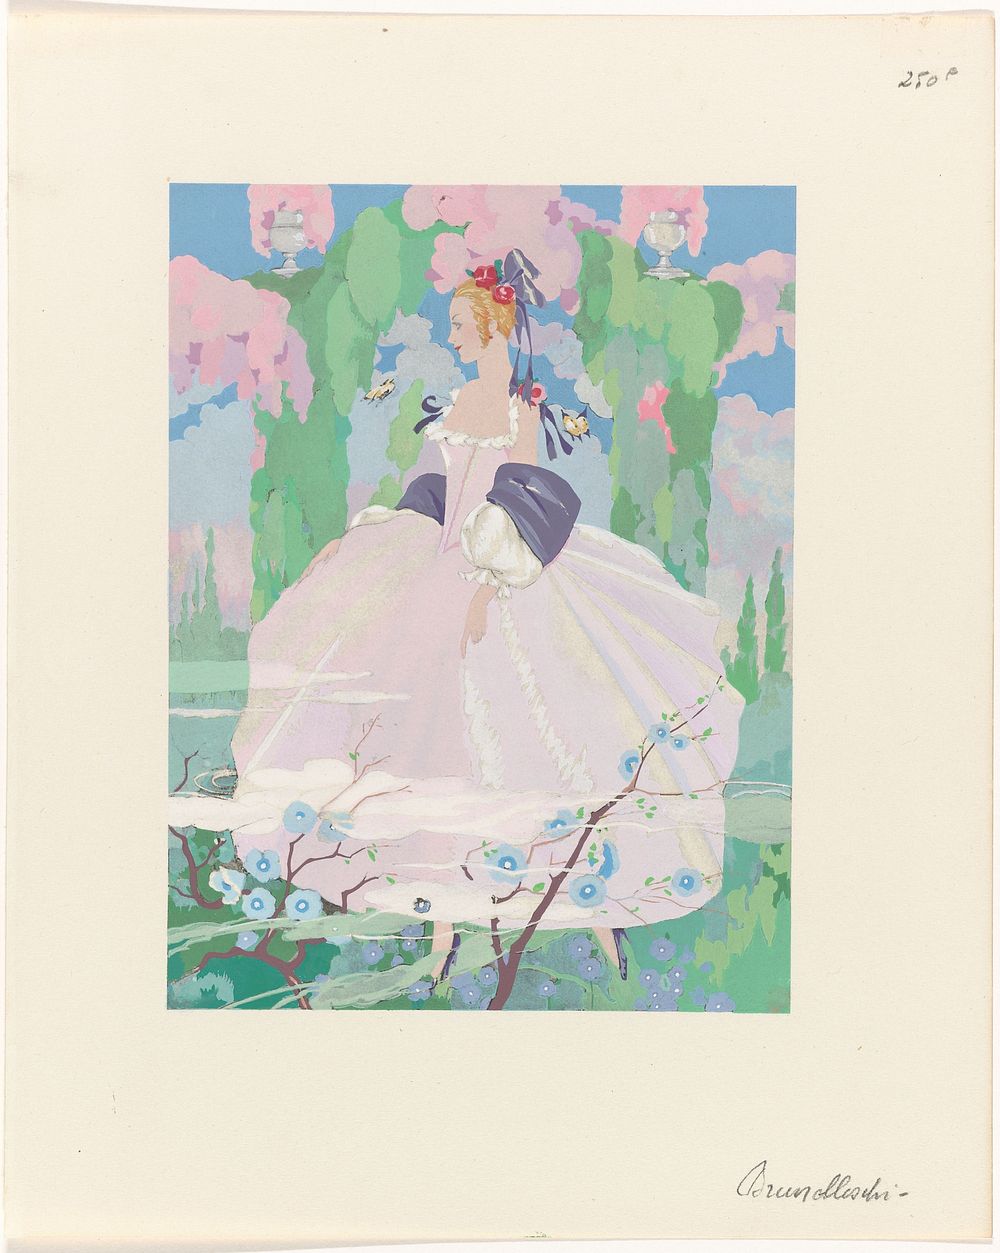 La Guirlande, Album mensuel d'art et de la litterature, 1919-1920 : Vrouw in roze jurk in tuin (1919 - 1920) by Umberto…